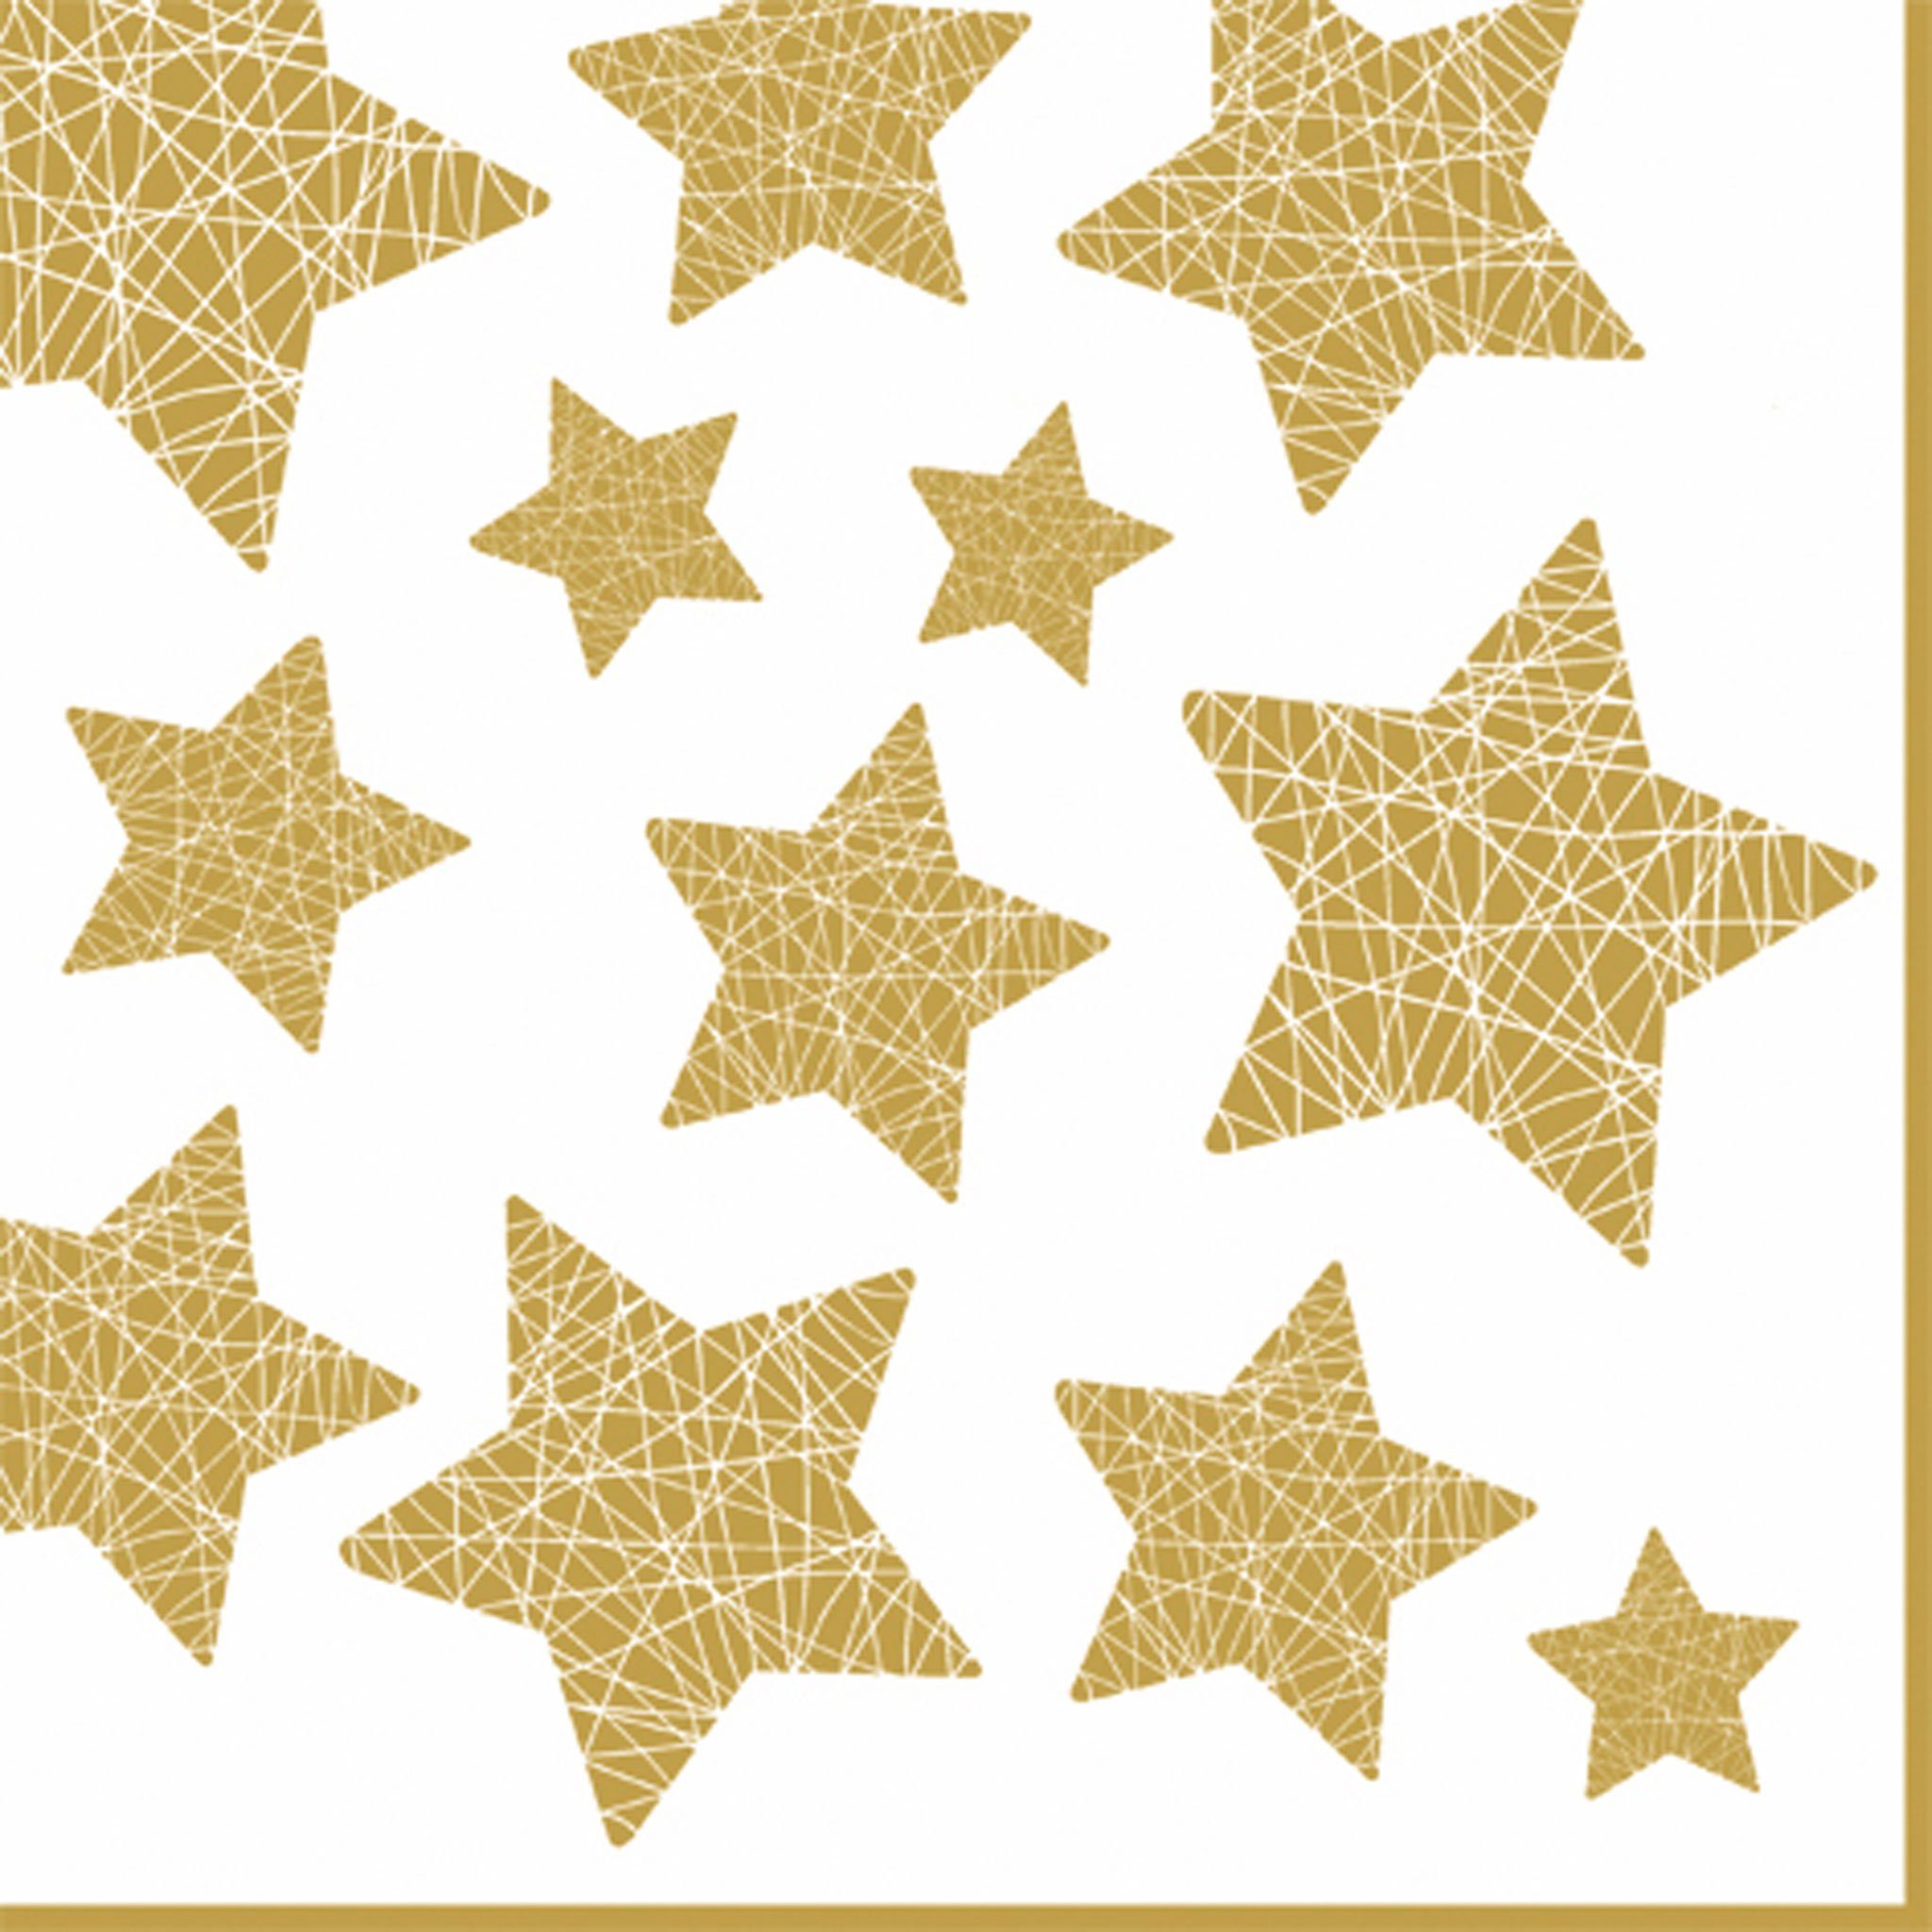 ti-flair Papierserviette, Servietten Papier 33x33cm mit Sternen Motiv 20 Stück Weiß / Gold